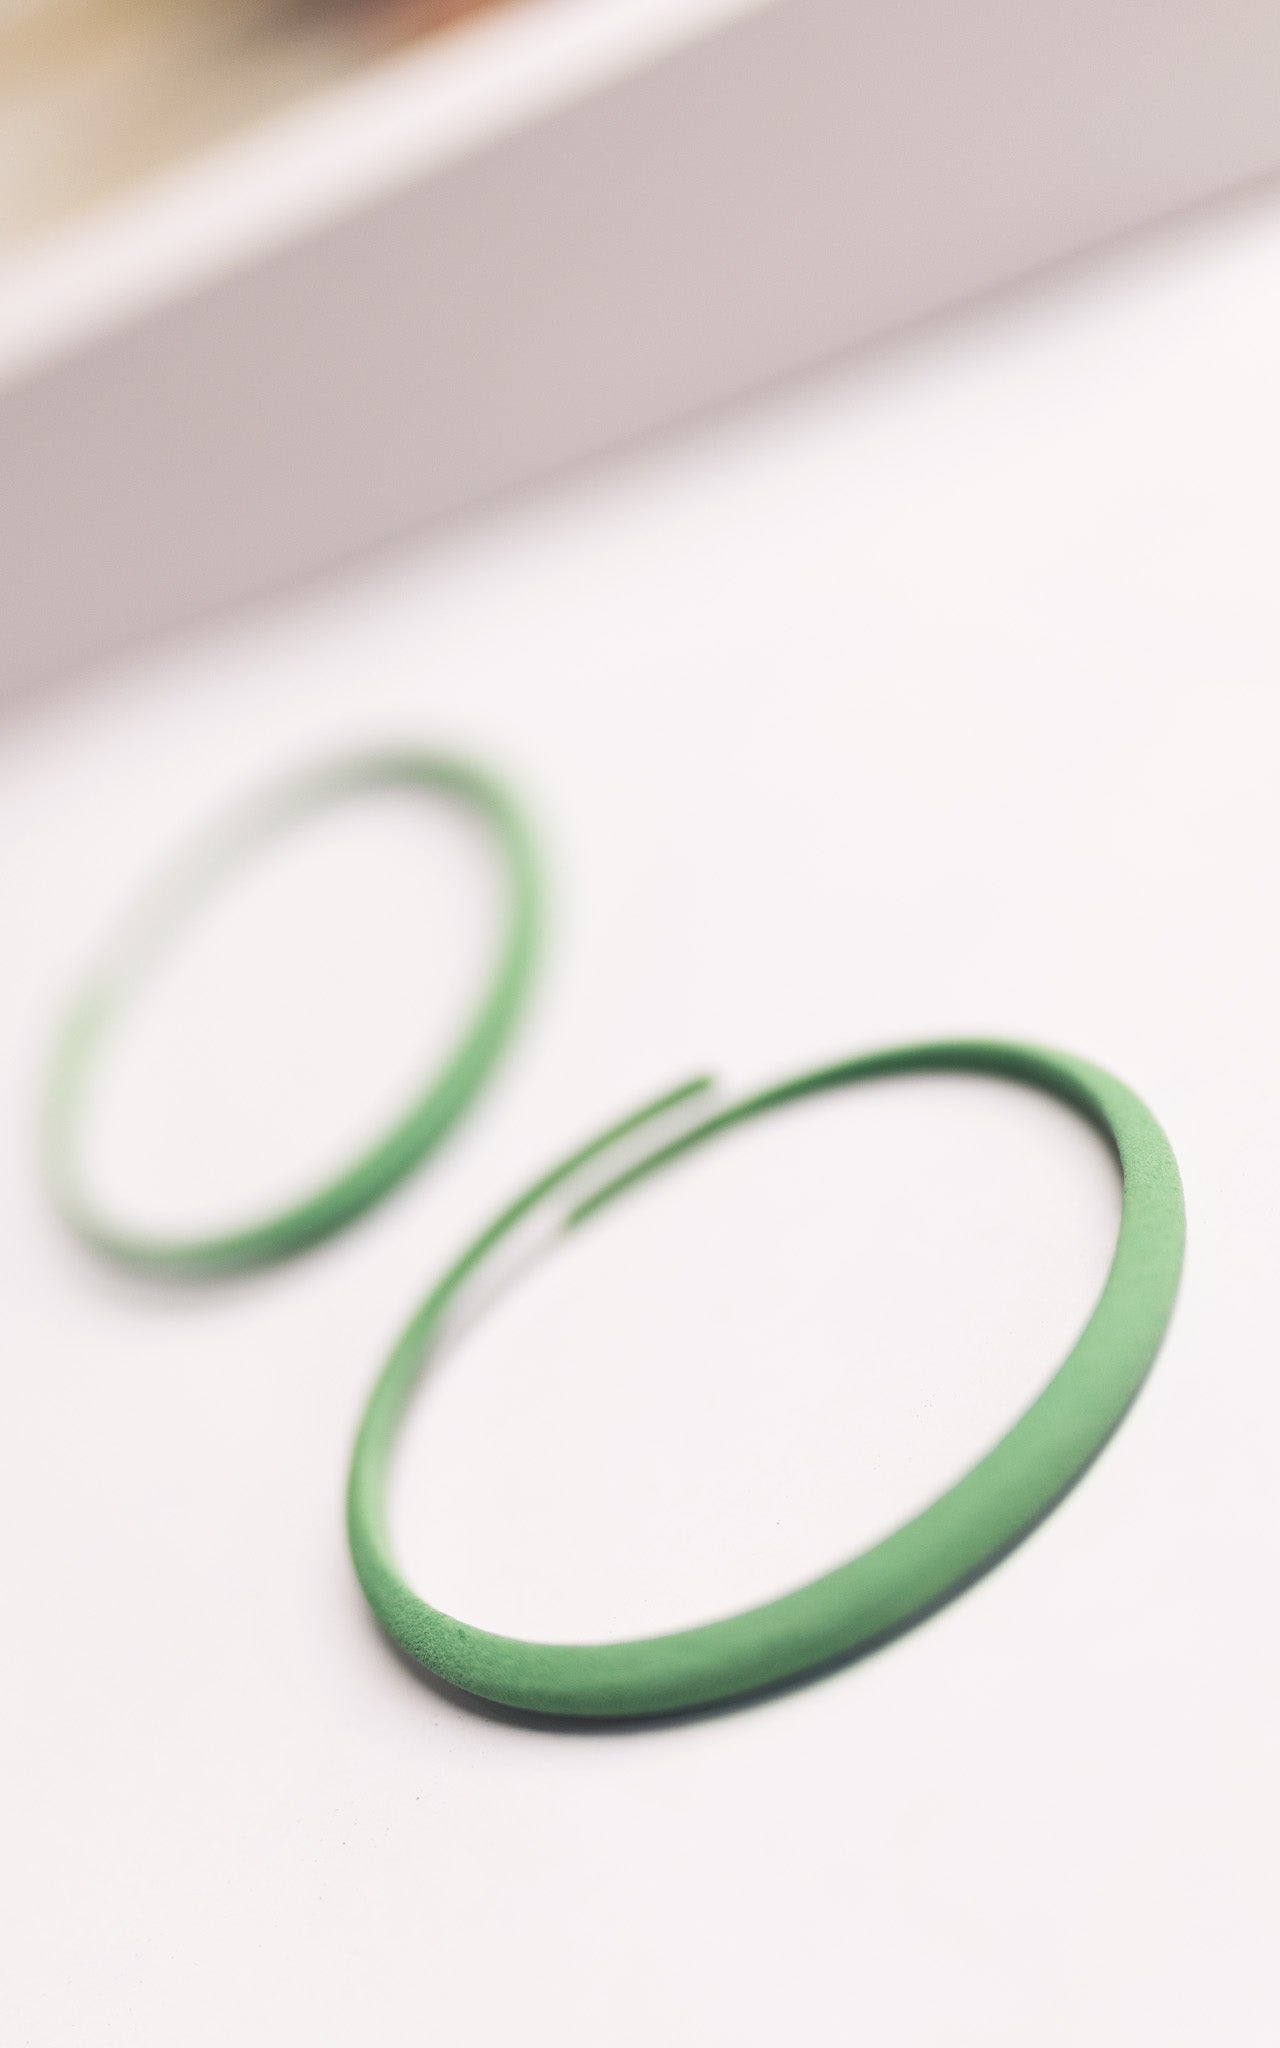 Bracelet vert selon la technologie 3D ultraléger et souple parfait pour les petits poignets.